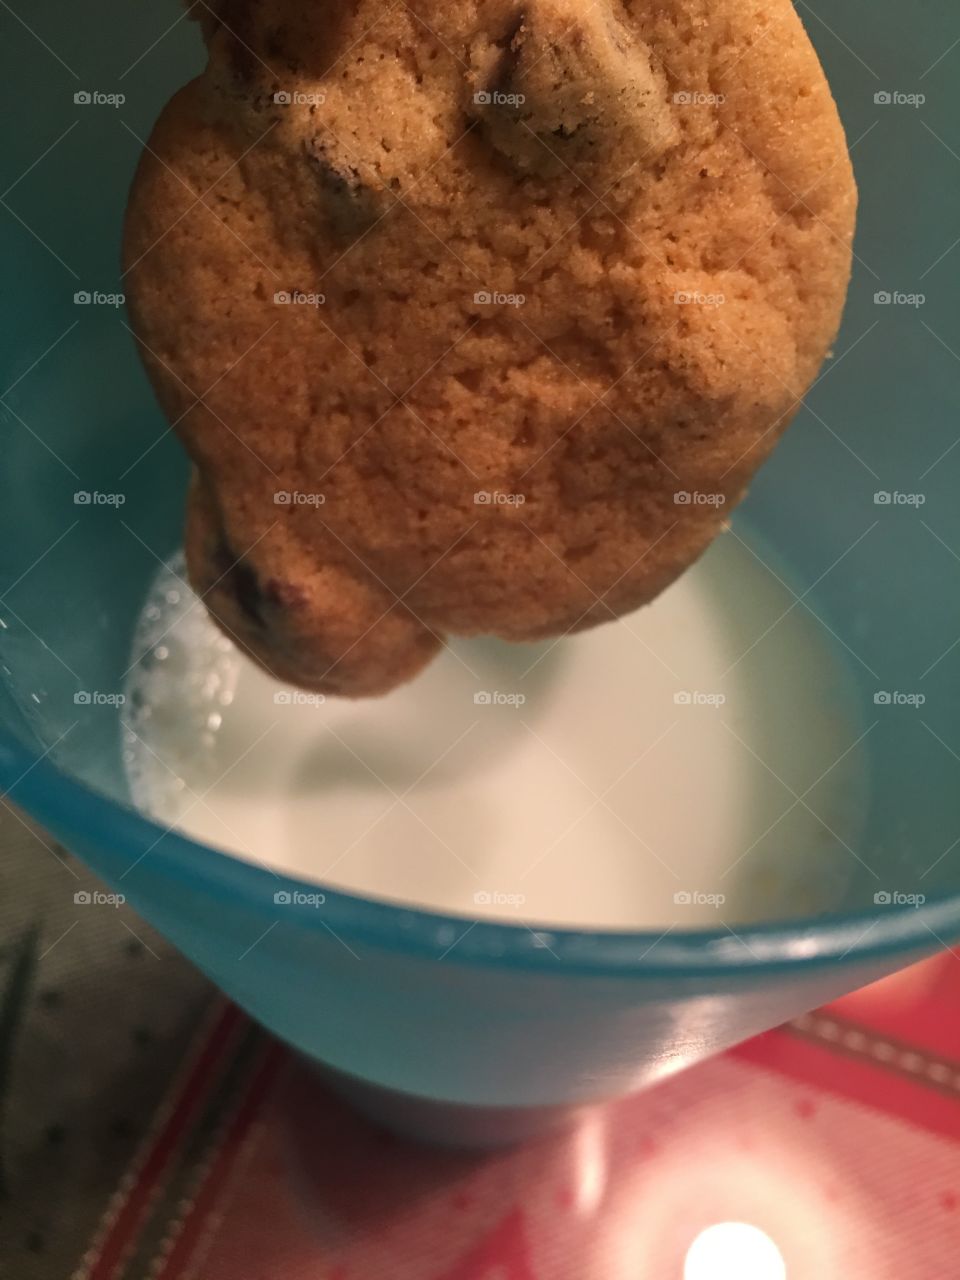 Cookies n milk